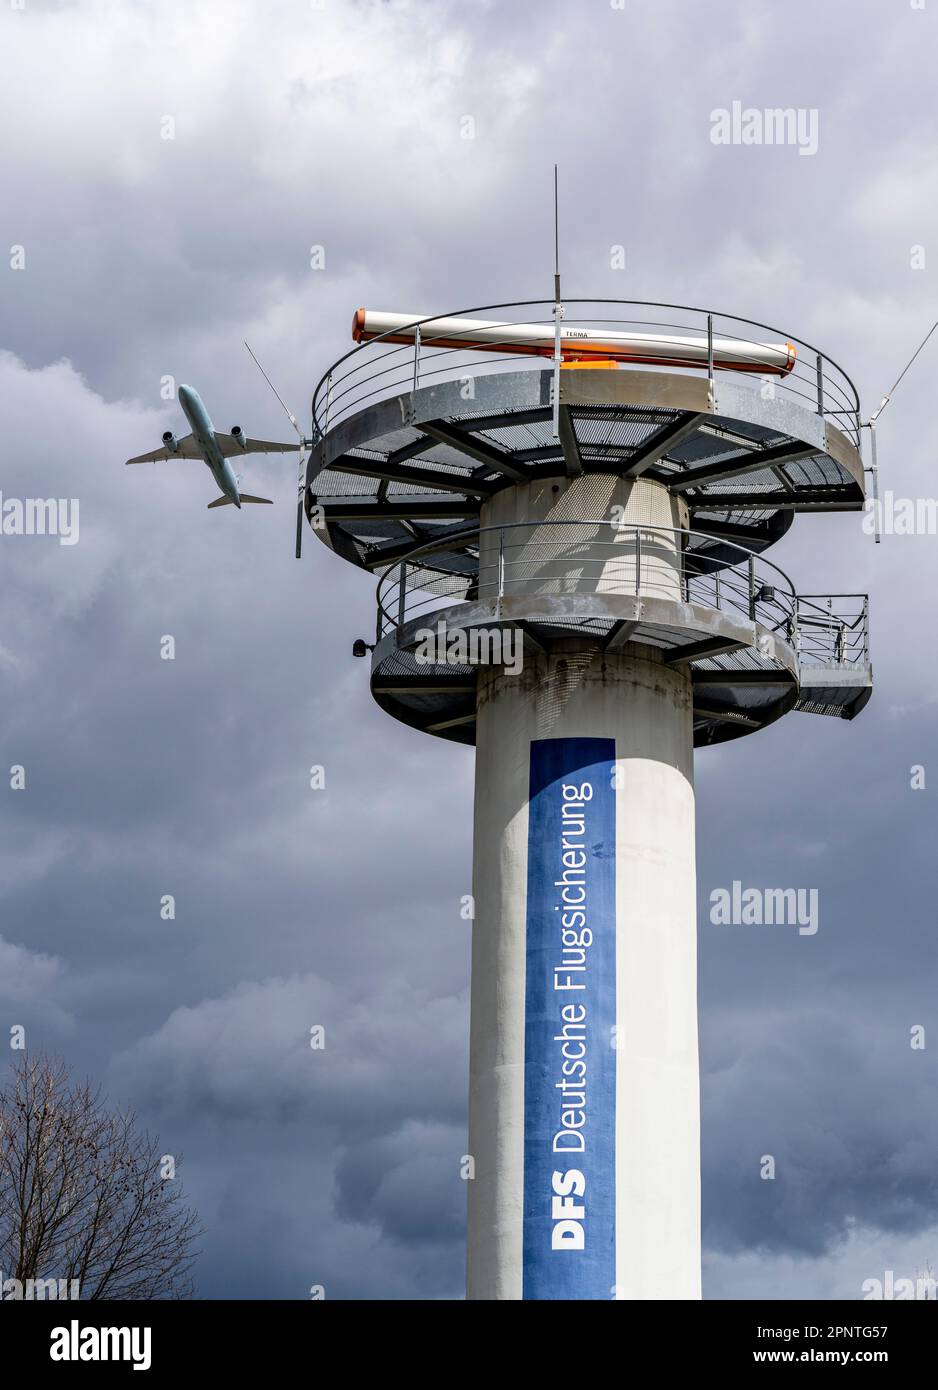 Tour radar du contrôle allemand de la circulation aérienne, DFS, à l'aéroport de Francfort-sur-le-main, FRA, décollage d'avions. Banque D'Images